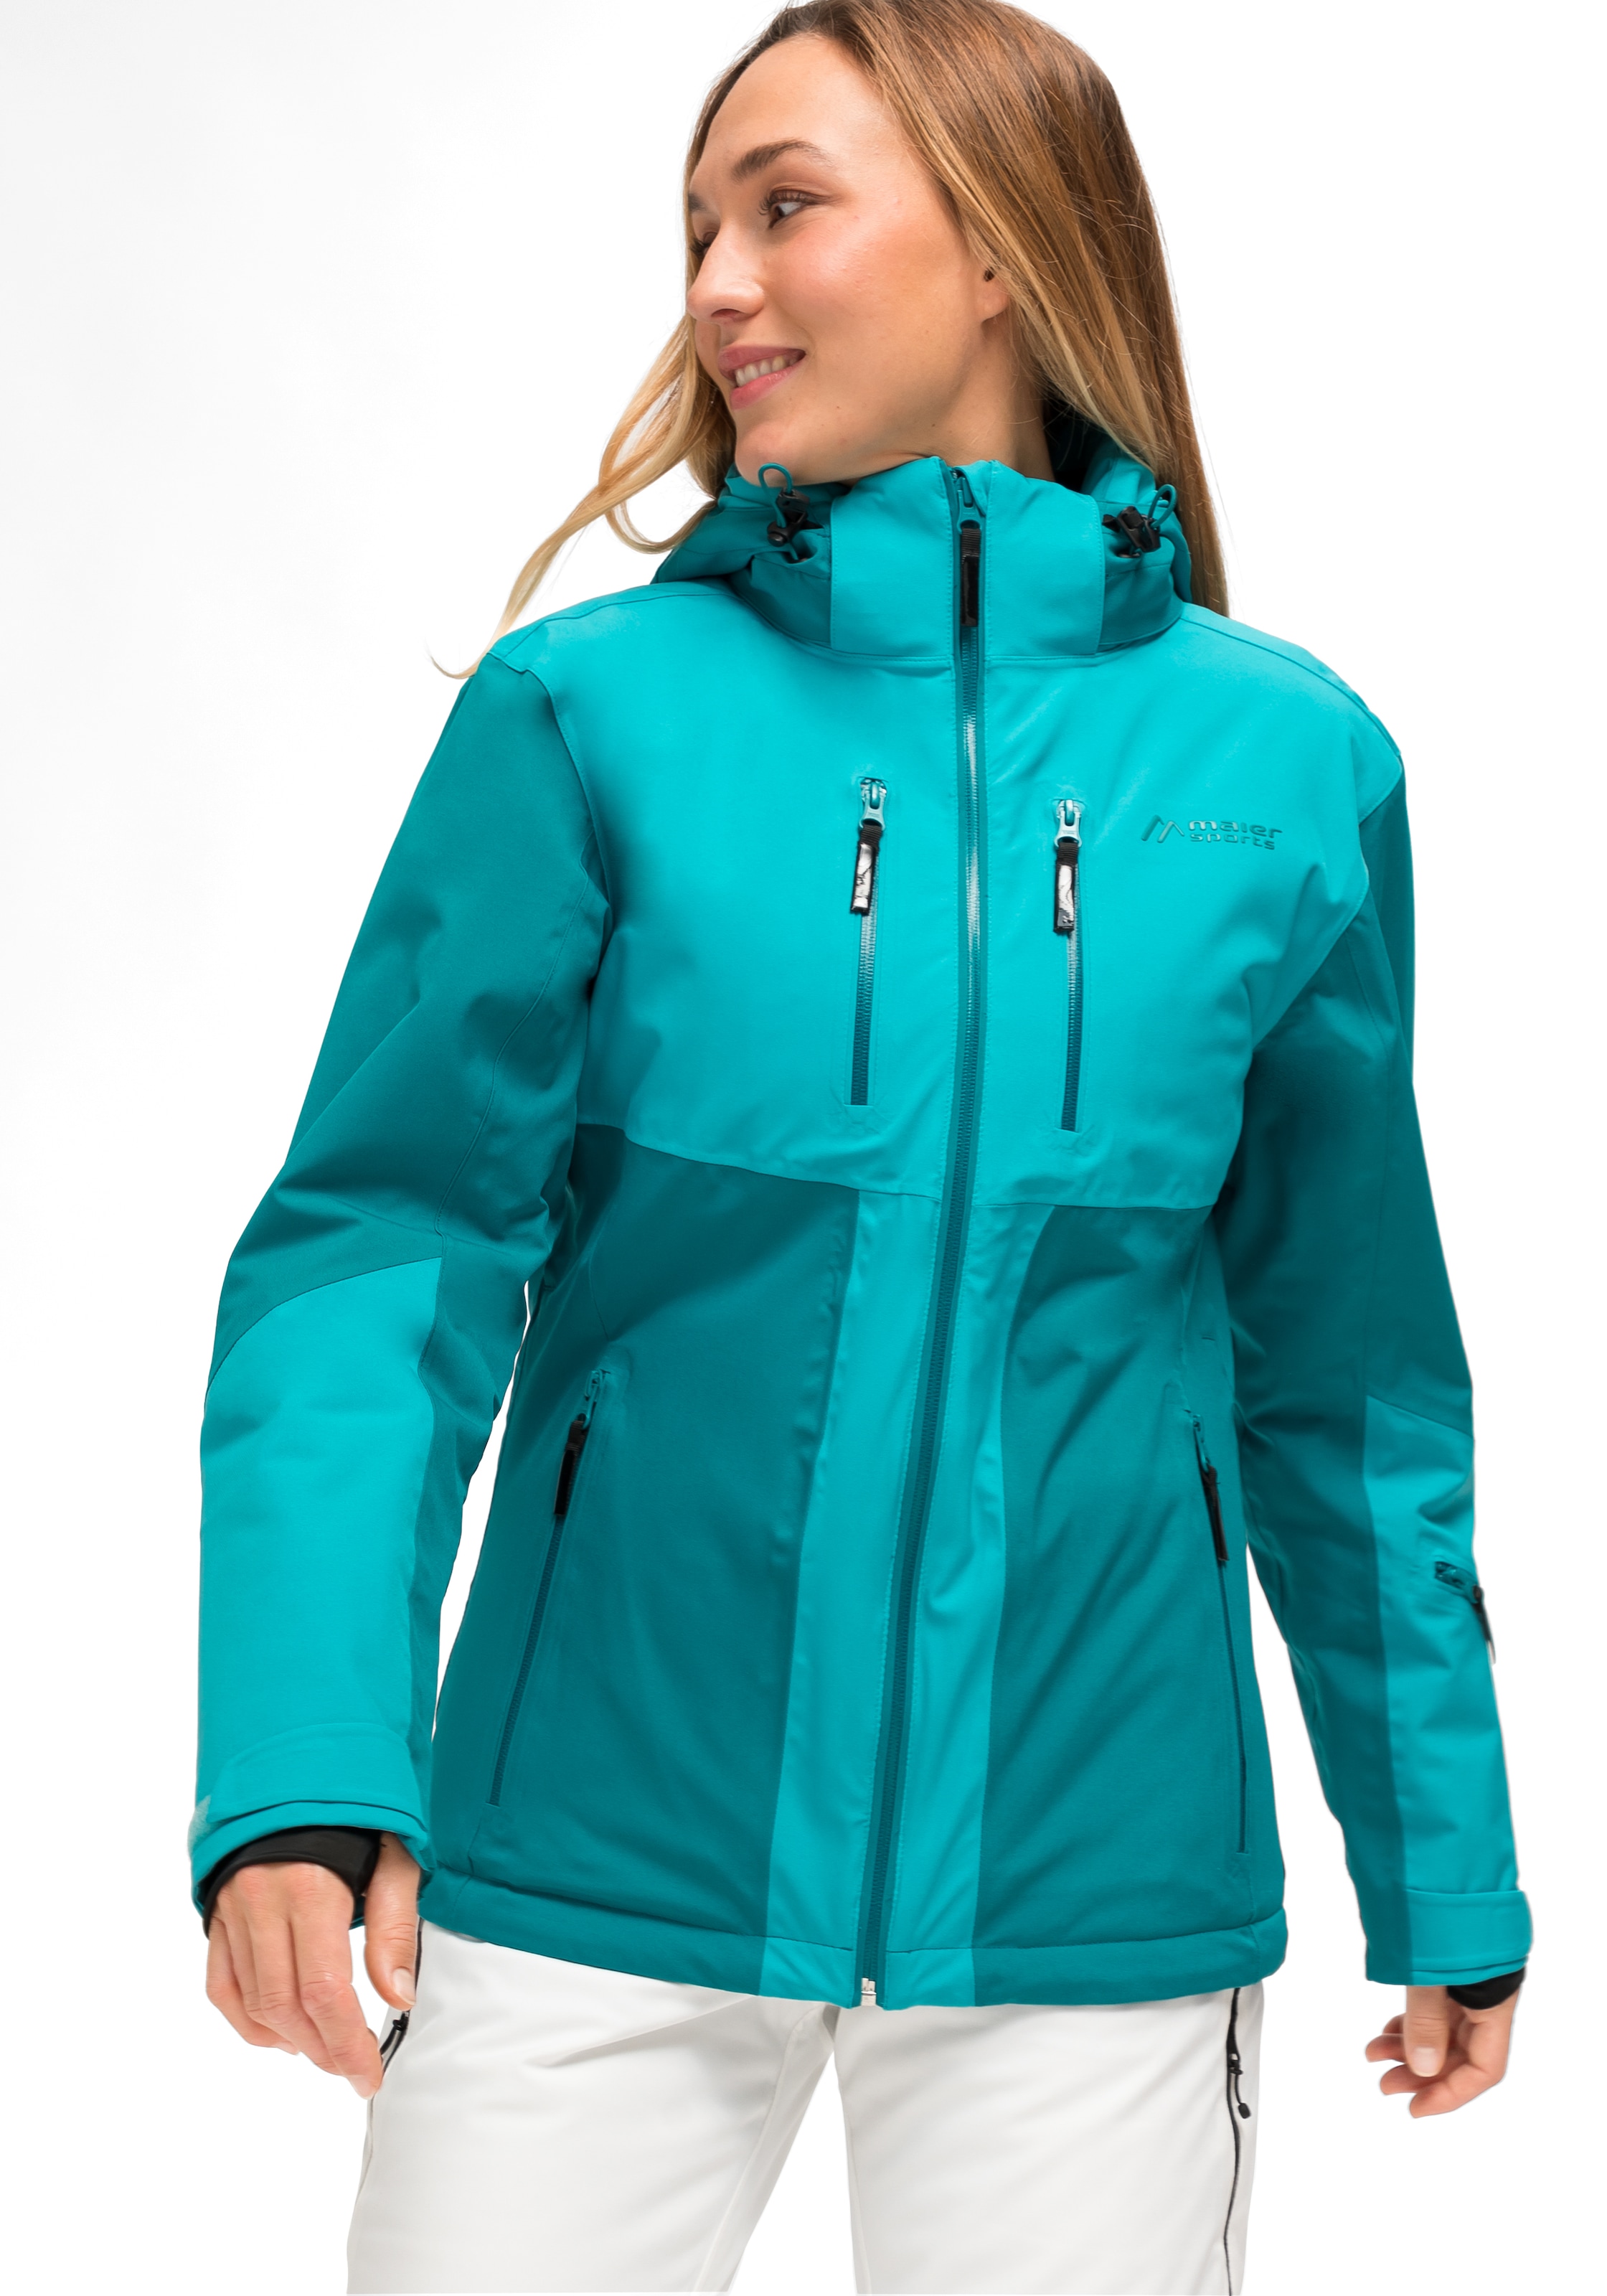 Maier Sports Skijacke »Pinilla«, atmungsaktive Damen Ski-Jacke, wasserdichte und winddichte Winterjacke